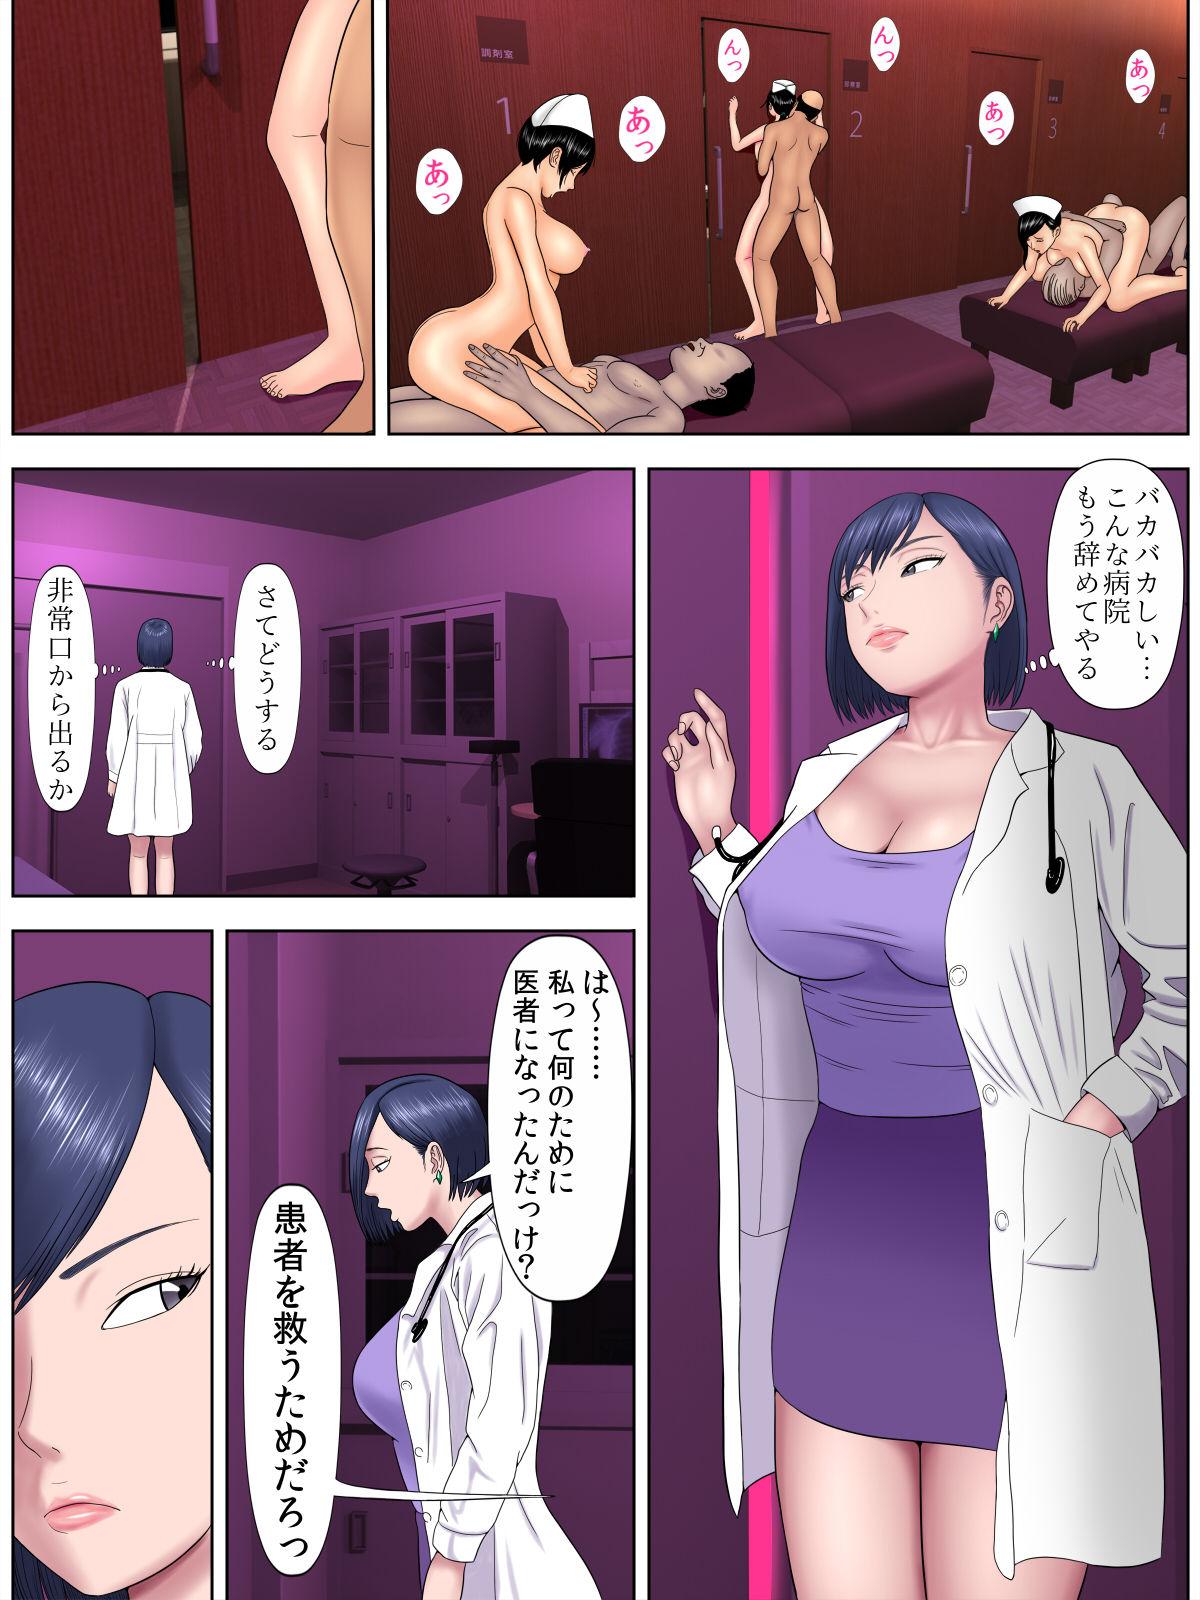 Sex Shinai to Shinu Yamai 4 31